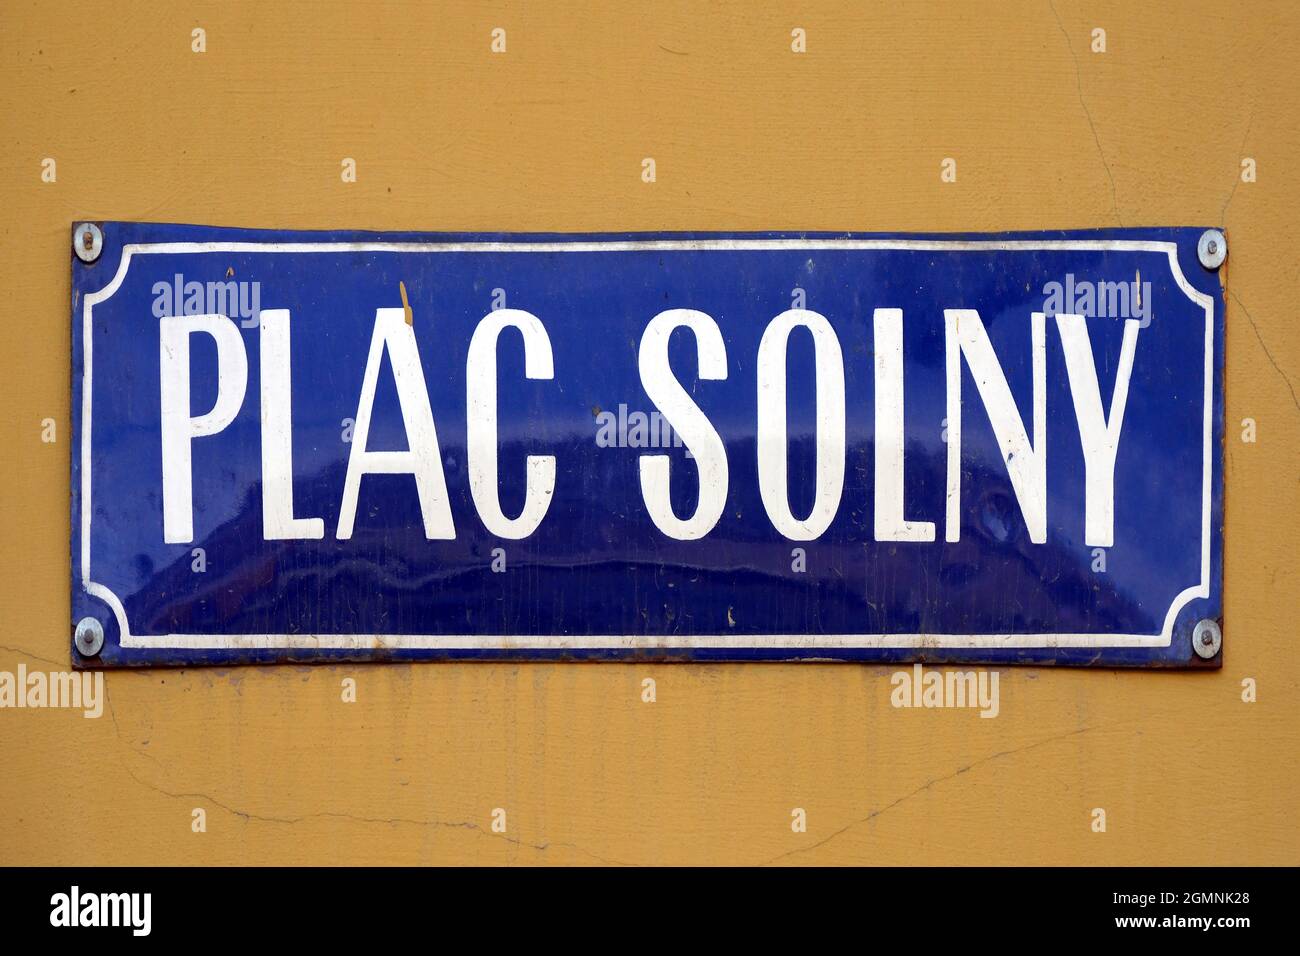 Straßenschild des Salzmarktplatzes Plac Solny in der Altstadt von Breslau - Polen. Stockfoto